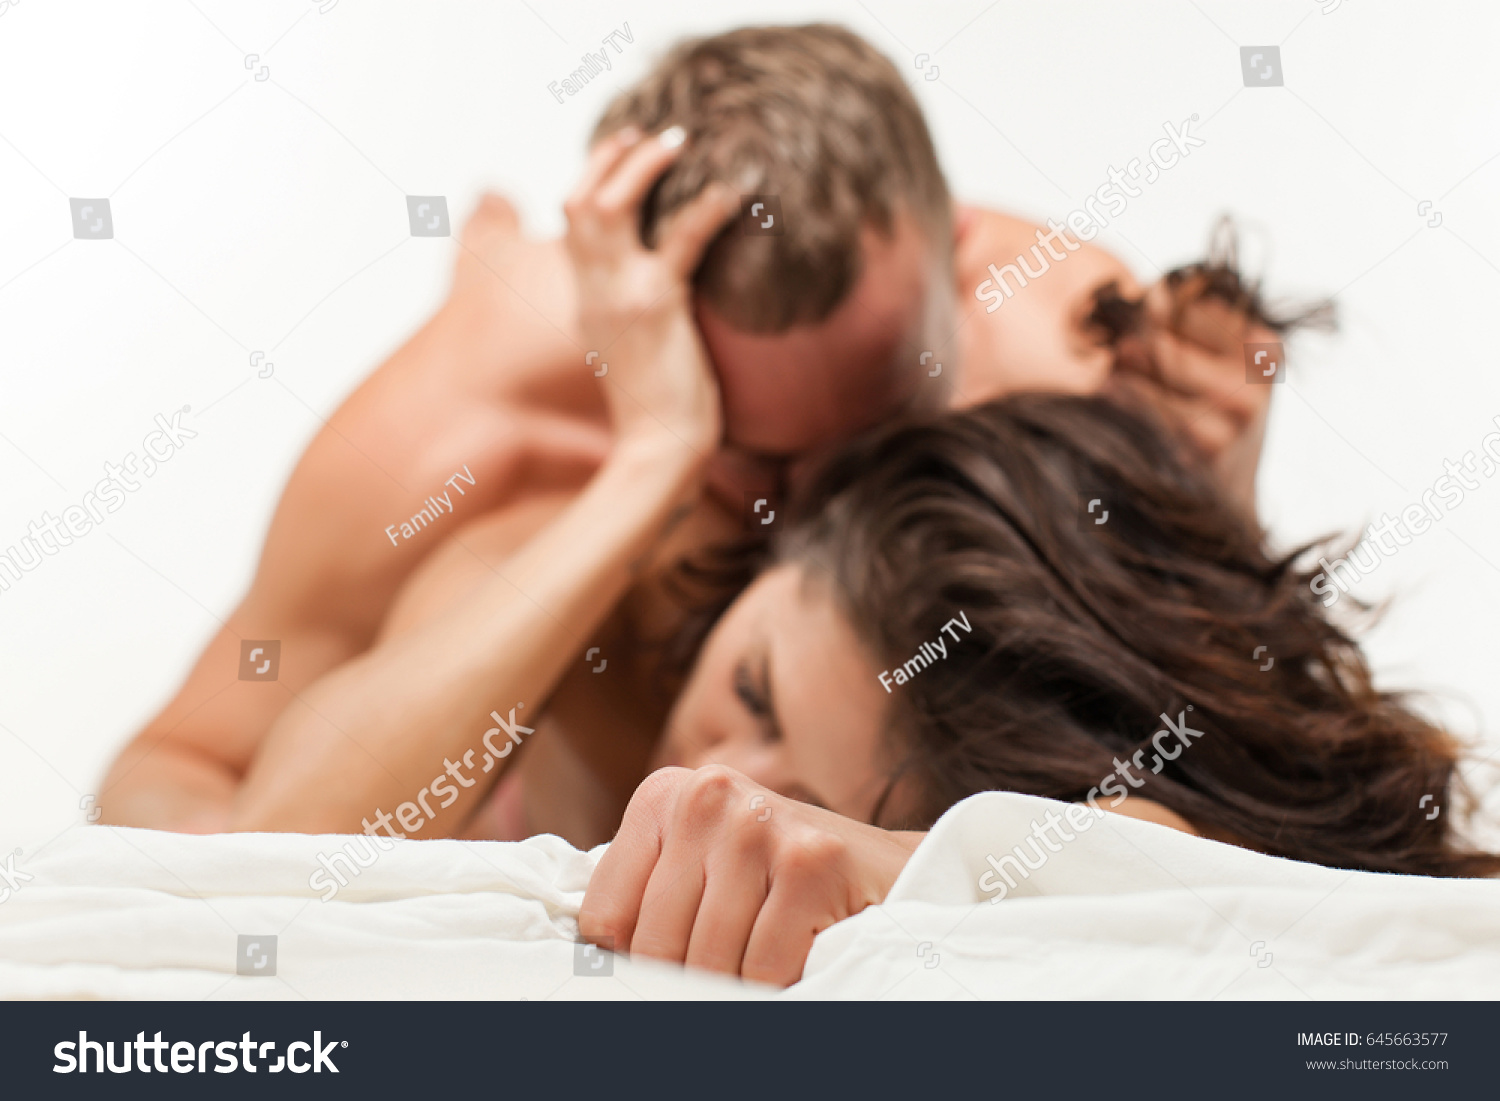 Sexy Romantic Sex Sleeping